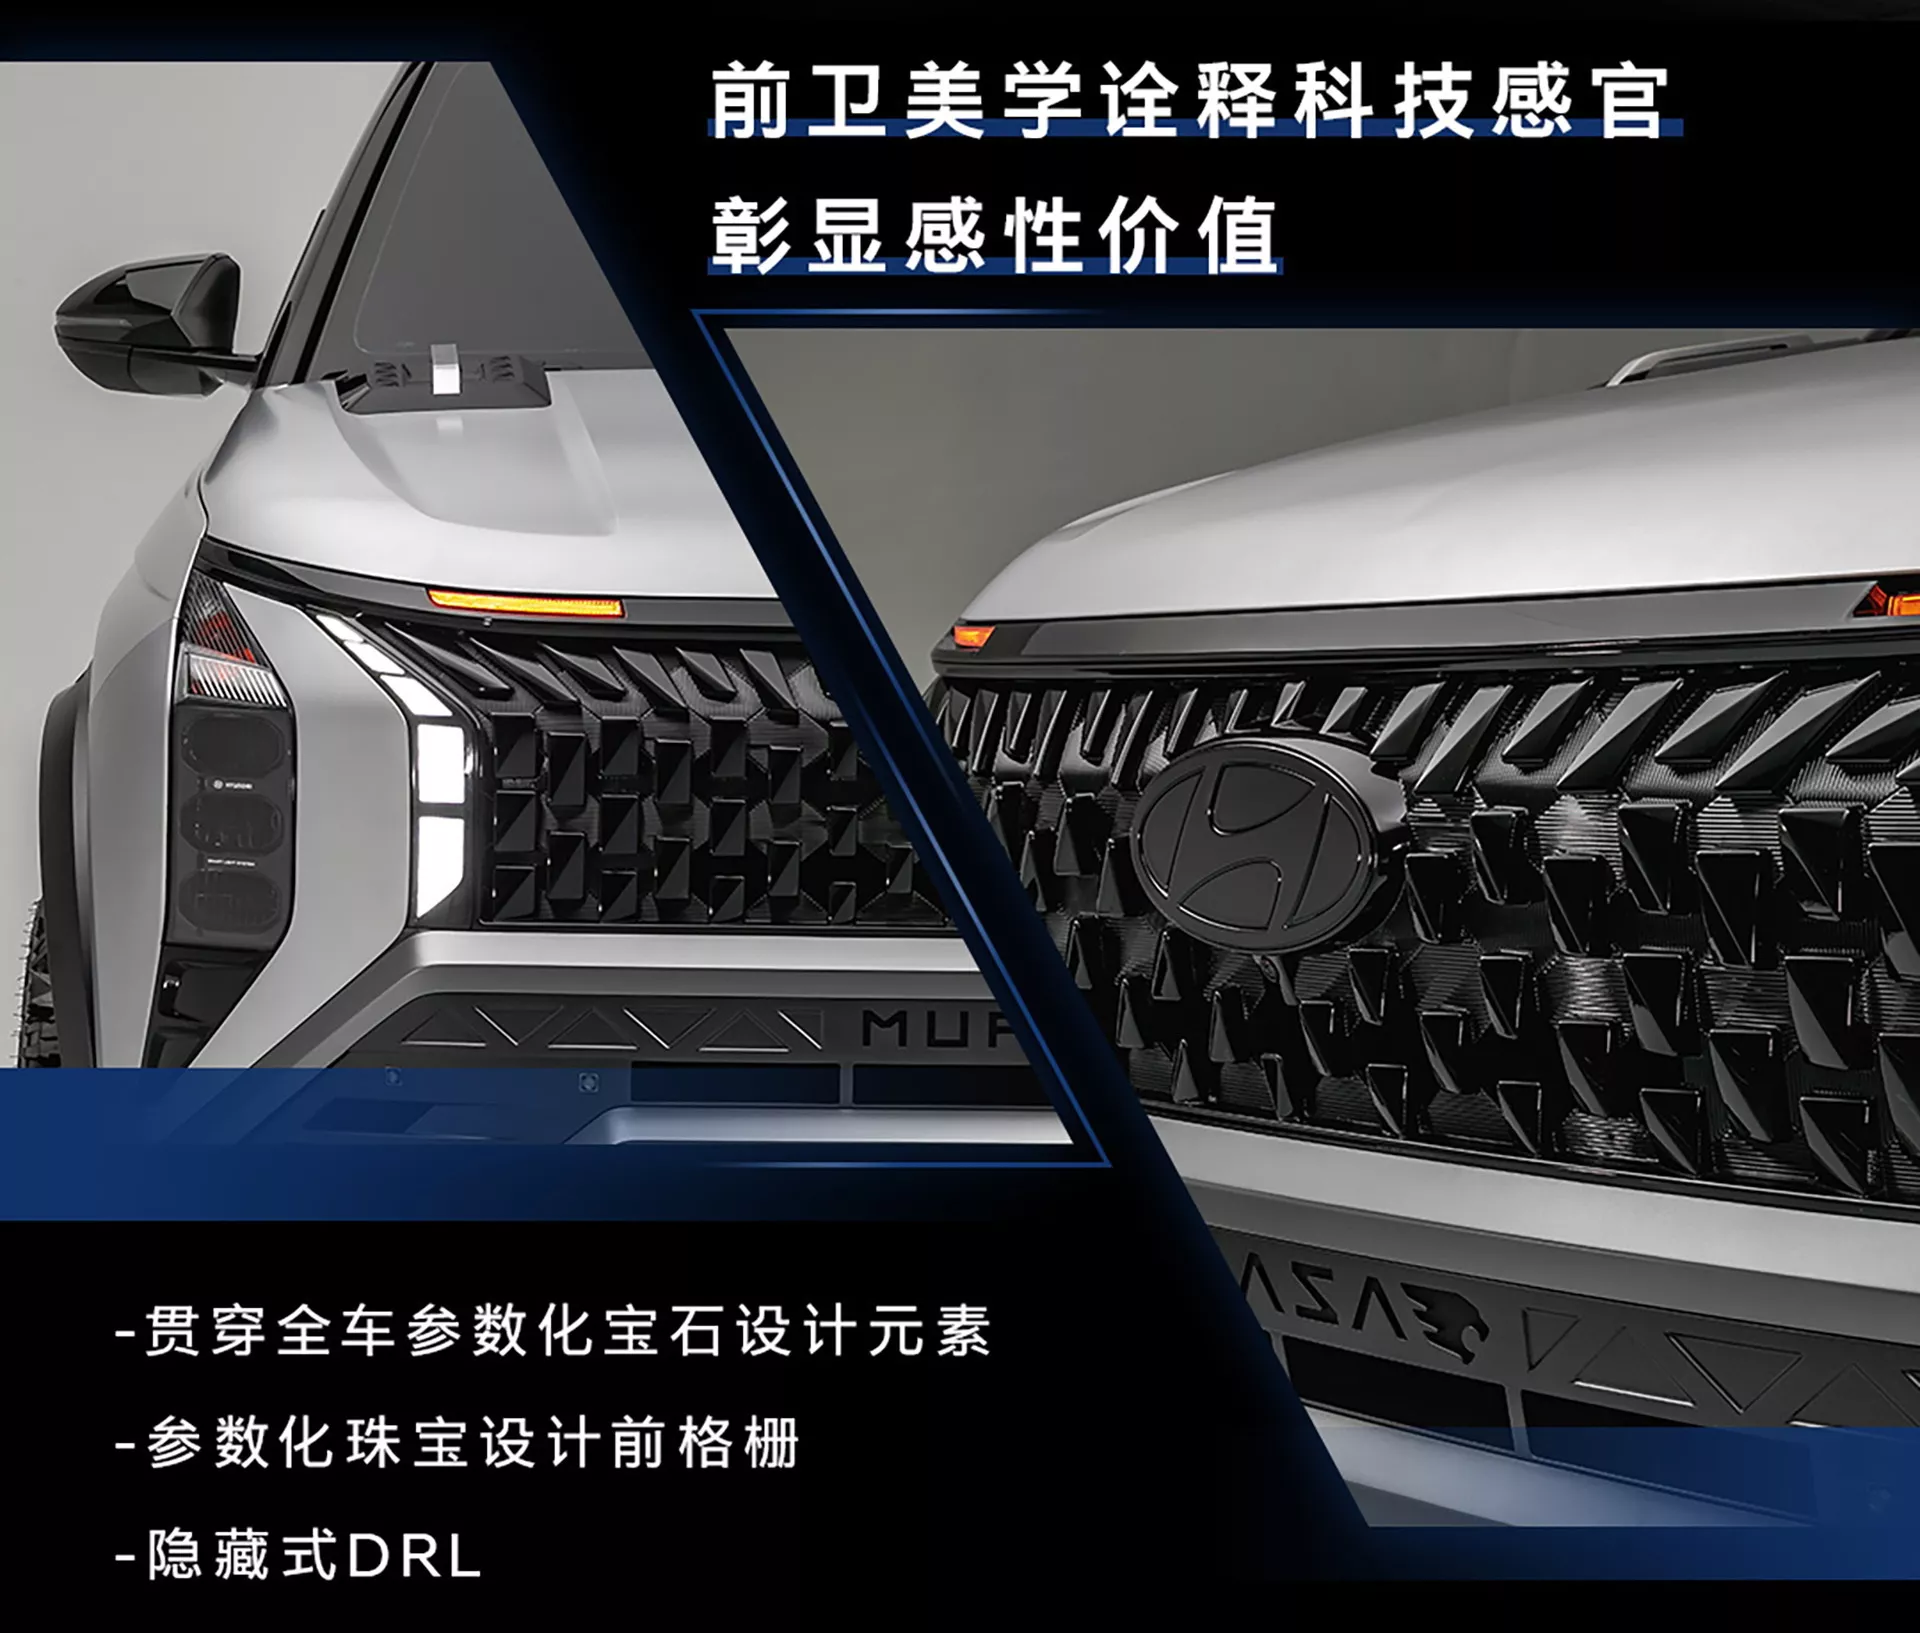 هيونداي تدشن سيارة موفاسا SUV الجديدة كلياً للدروب الوعرة 10